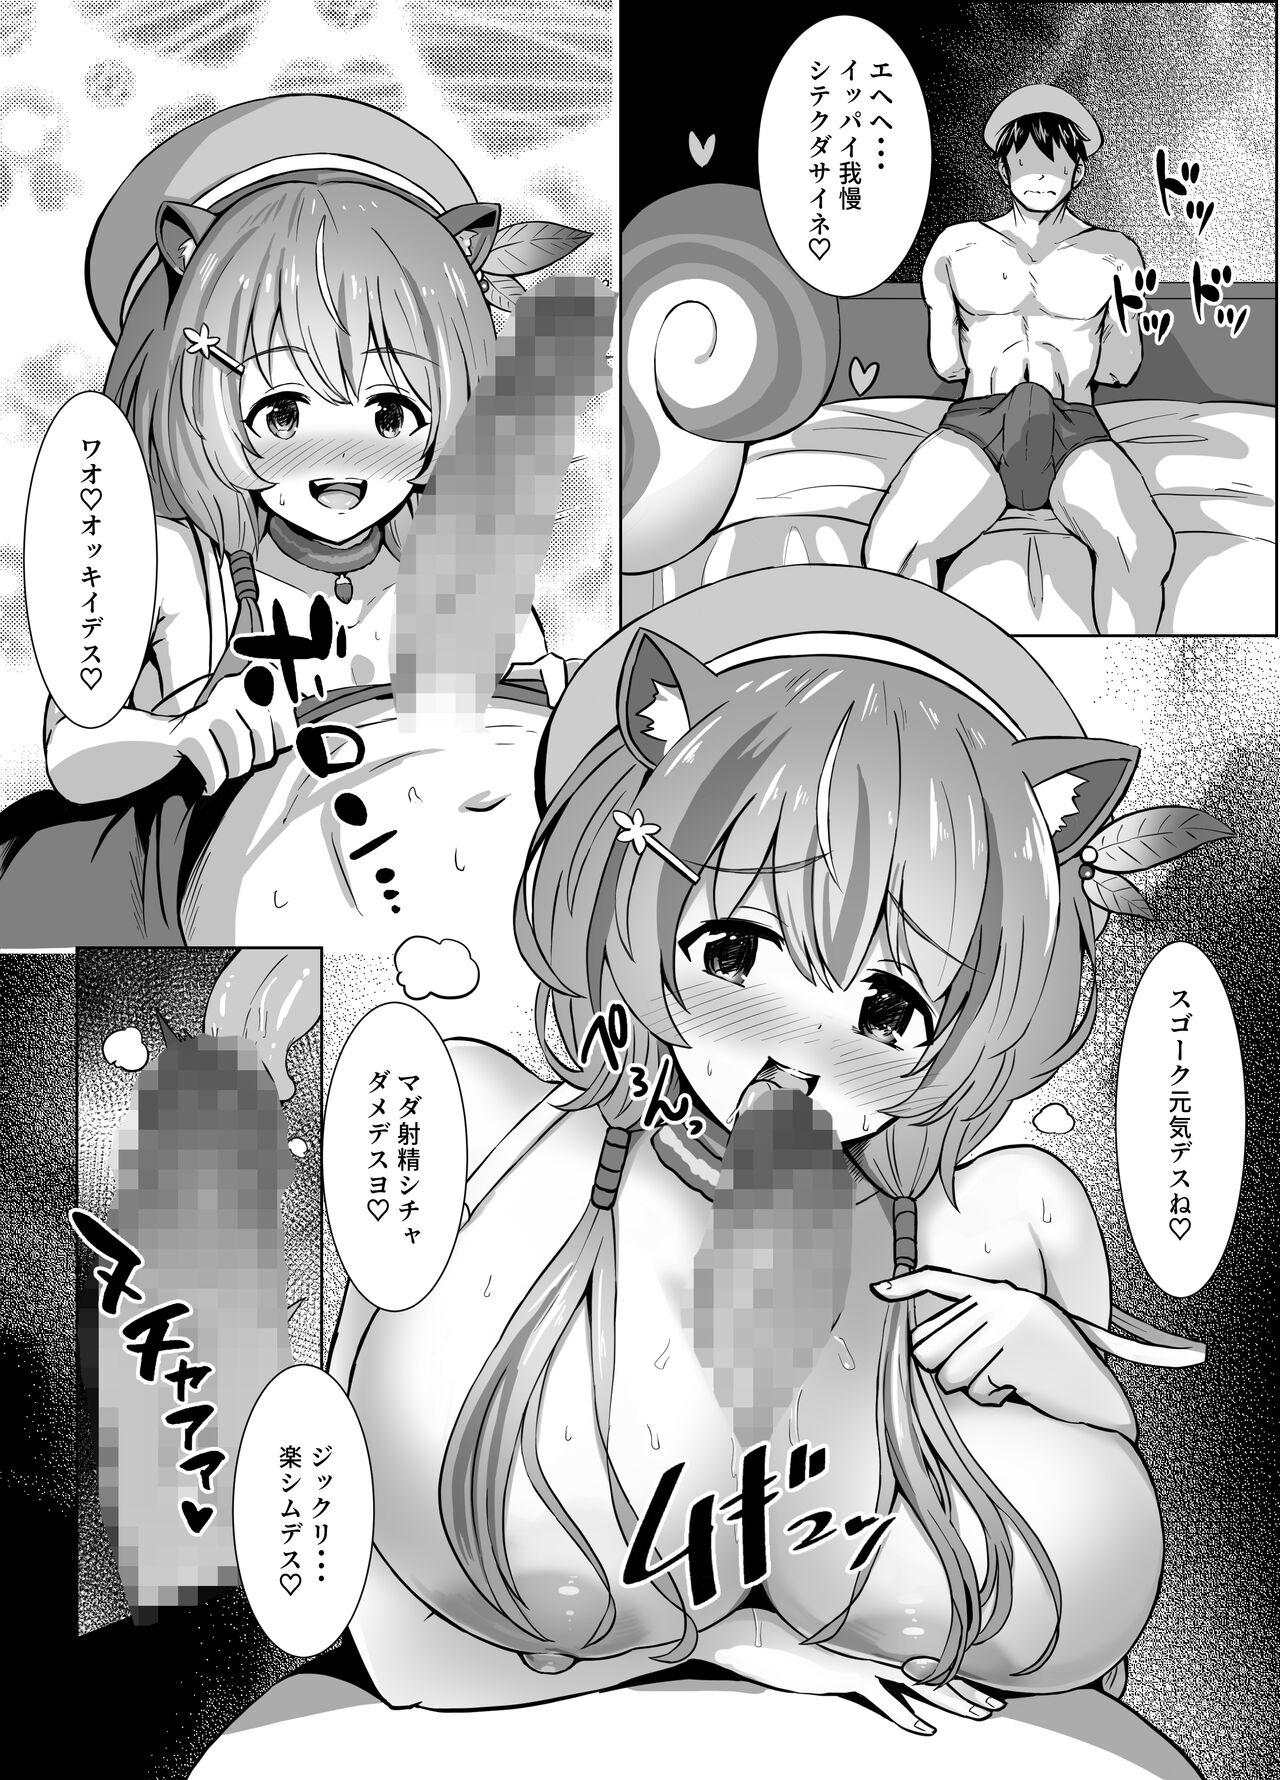 Ayunda-san no Monochro Manga 1